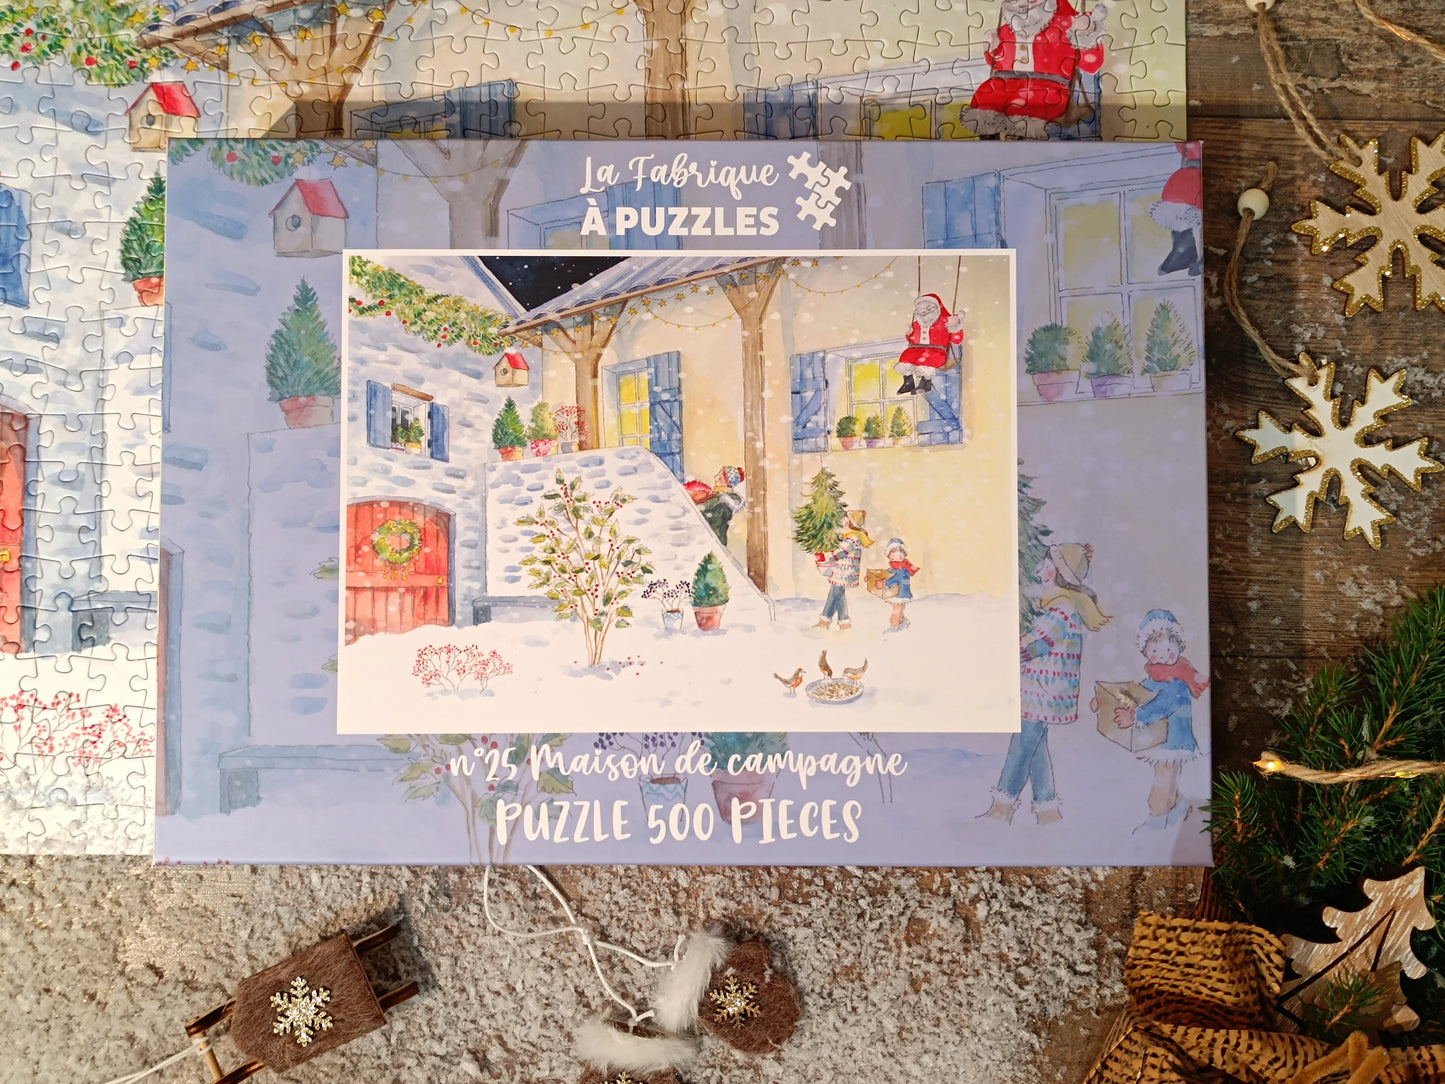 Puzzle n°25 "Maison de campagne" 500 pieces by Delphine Balme